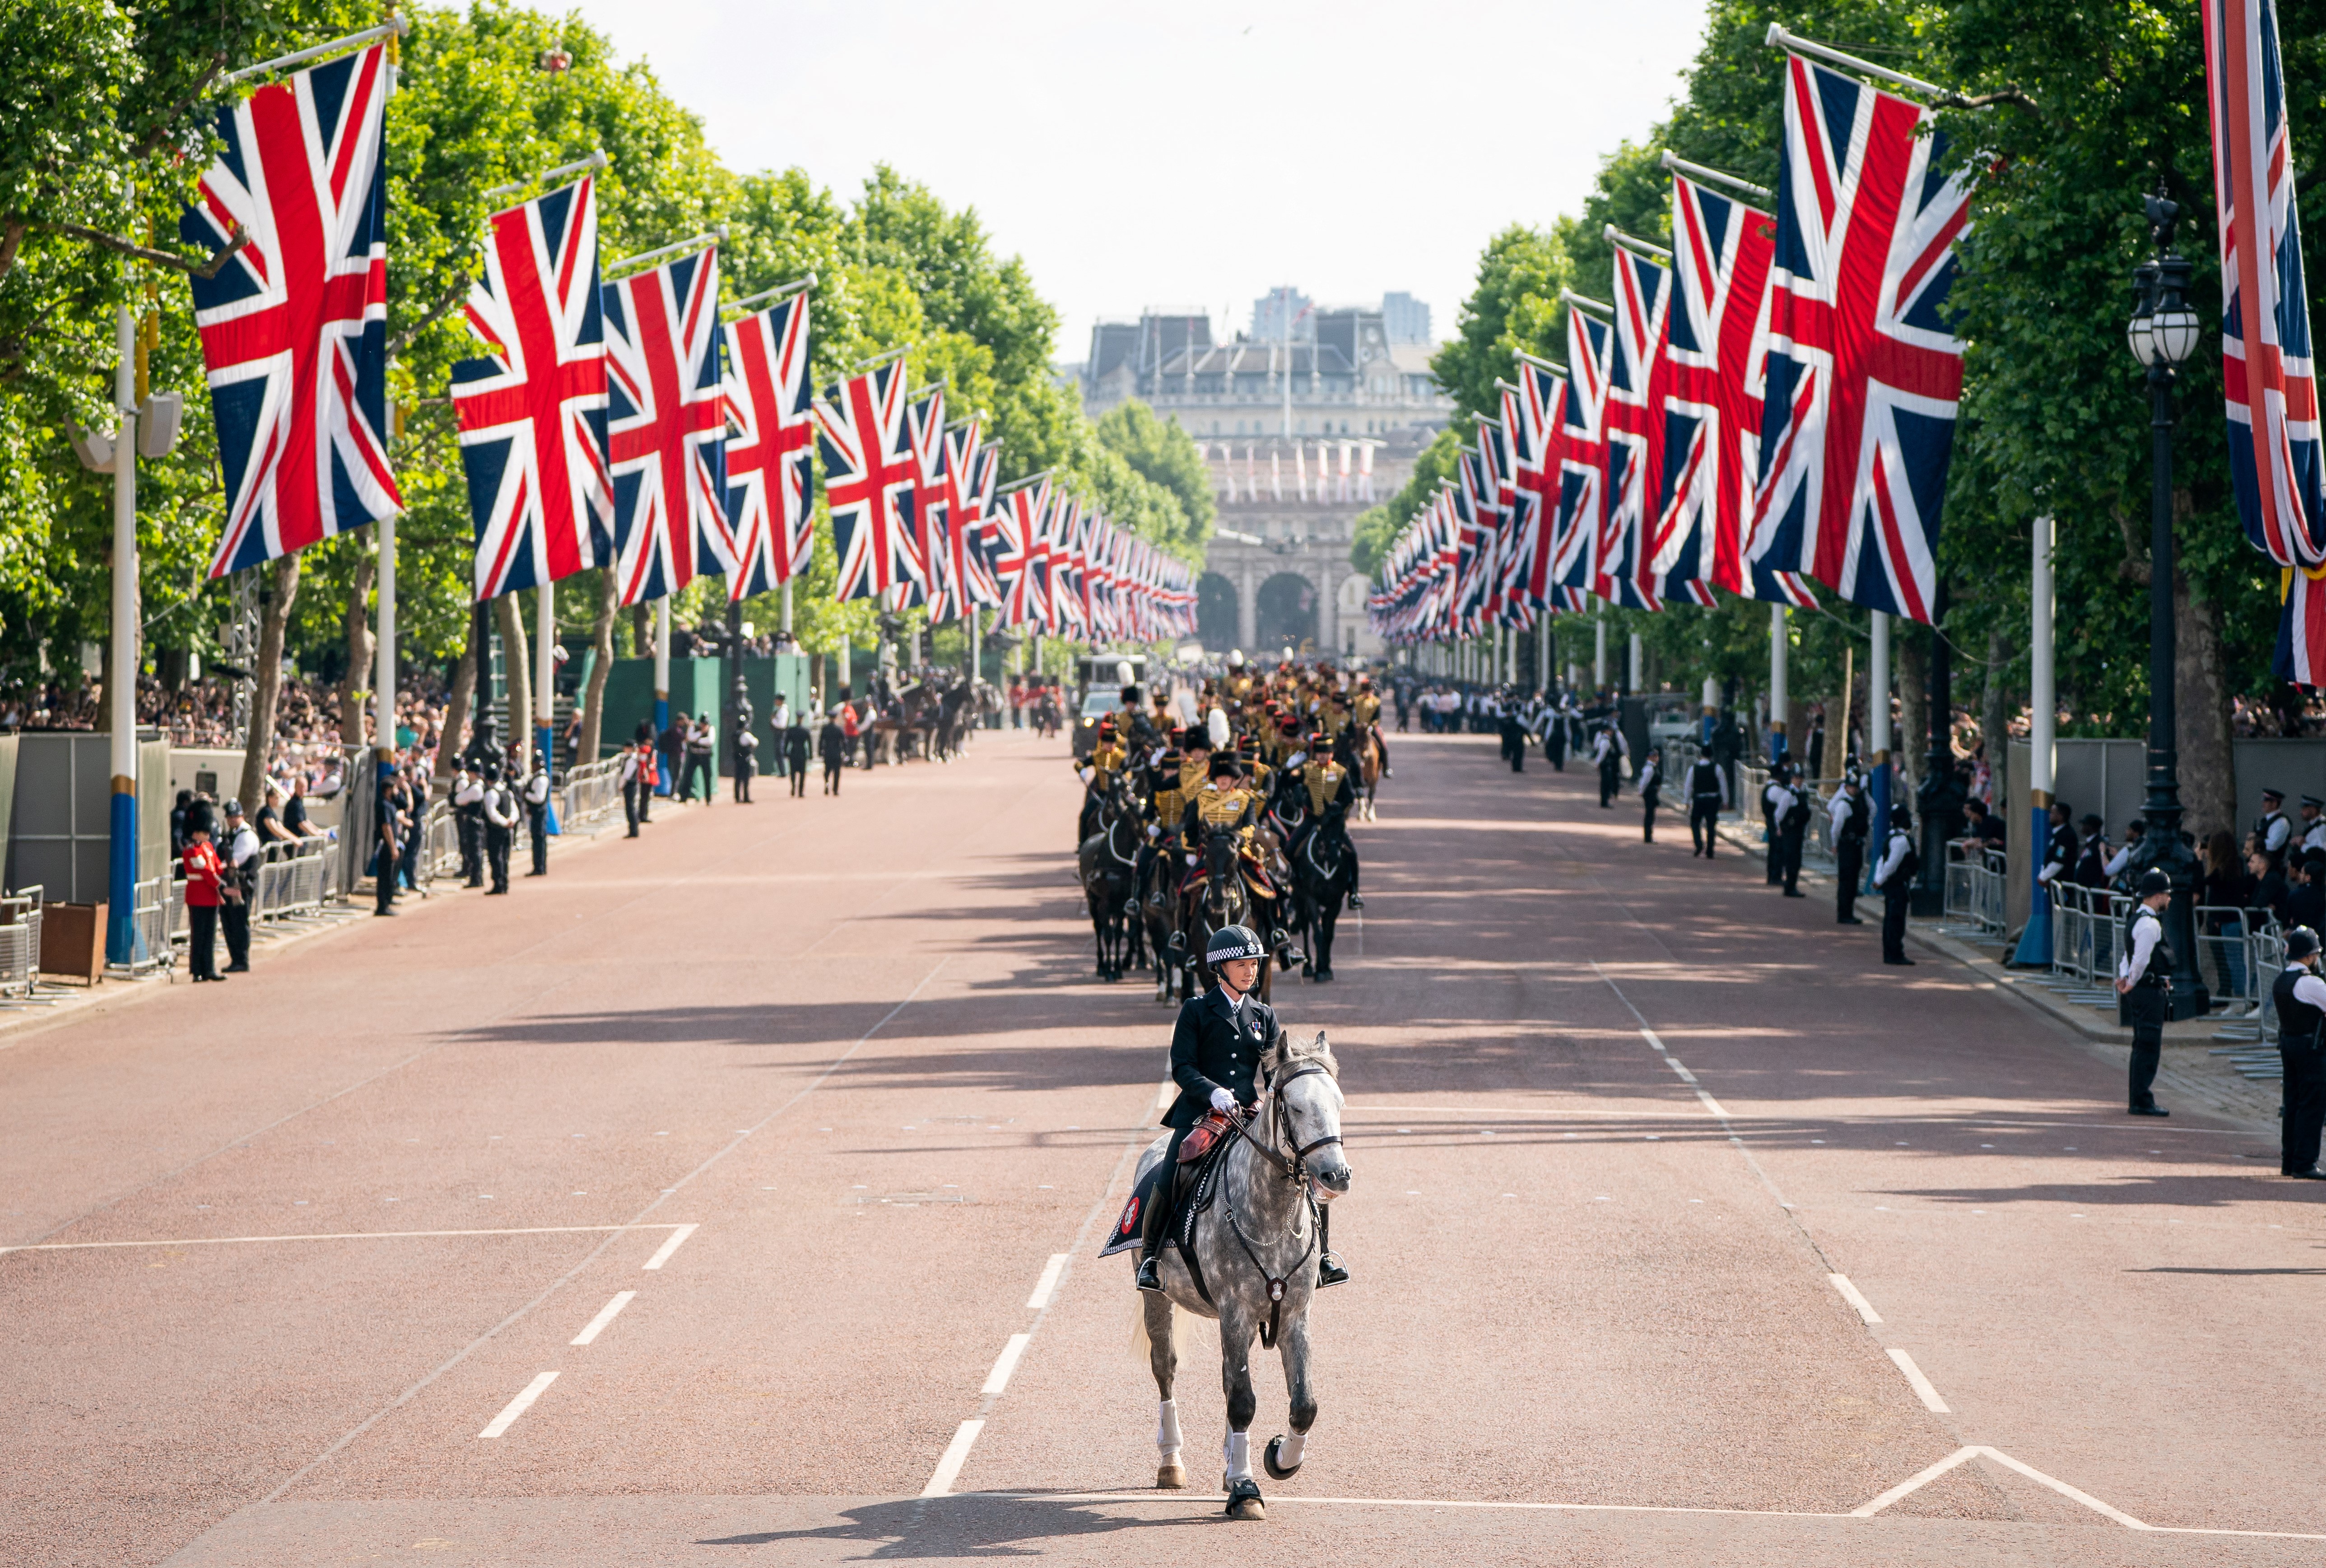 La familia real inglesa cambió su apellido alemán para demostrar como forma de lealtad al pueblo inglés. Son Windsor solo desde hace 105 años (Photo by Aaron Chown / POOL / AFP)